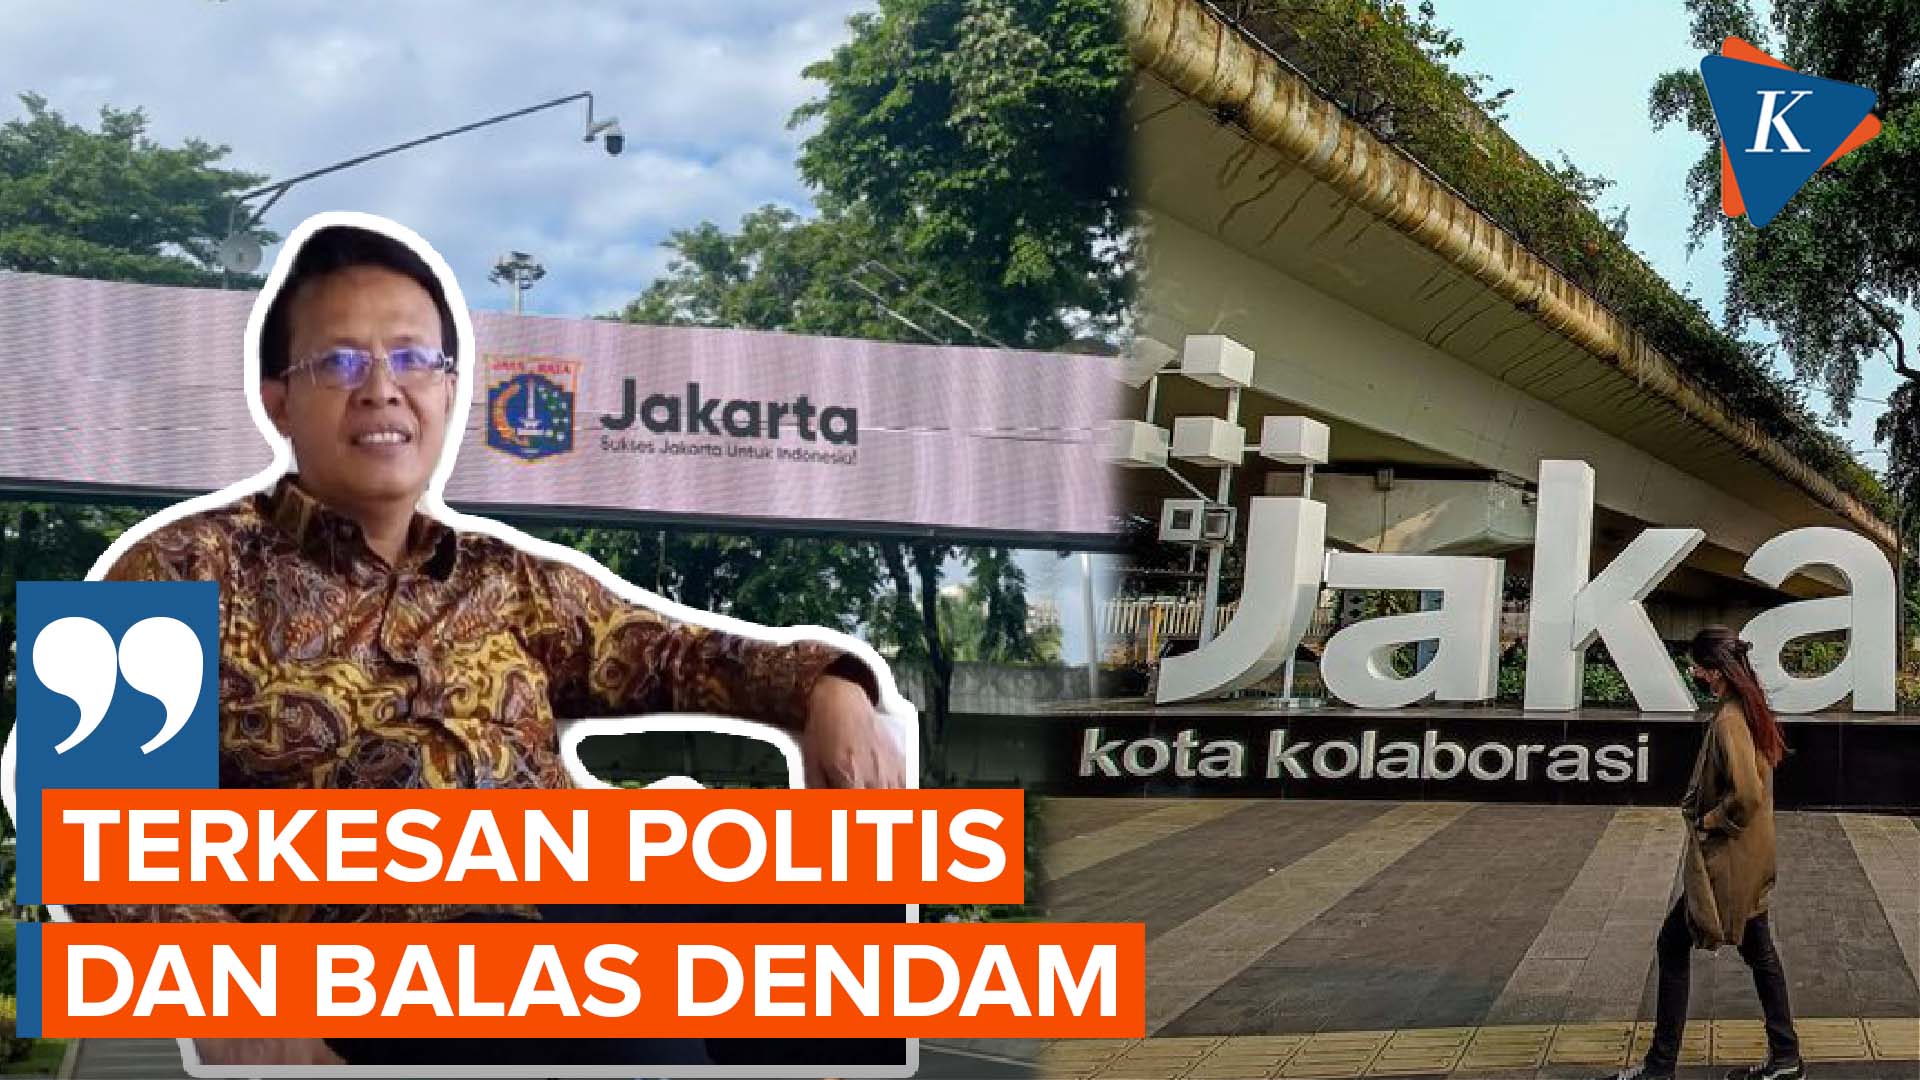 Heru Ganti Slogan Jakarta Era Anies, Pengamat Menilai Terkesan Politis dan Balas Dendam